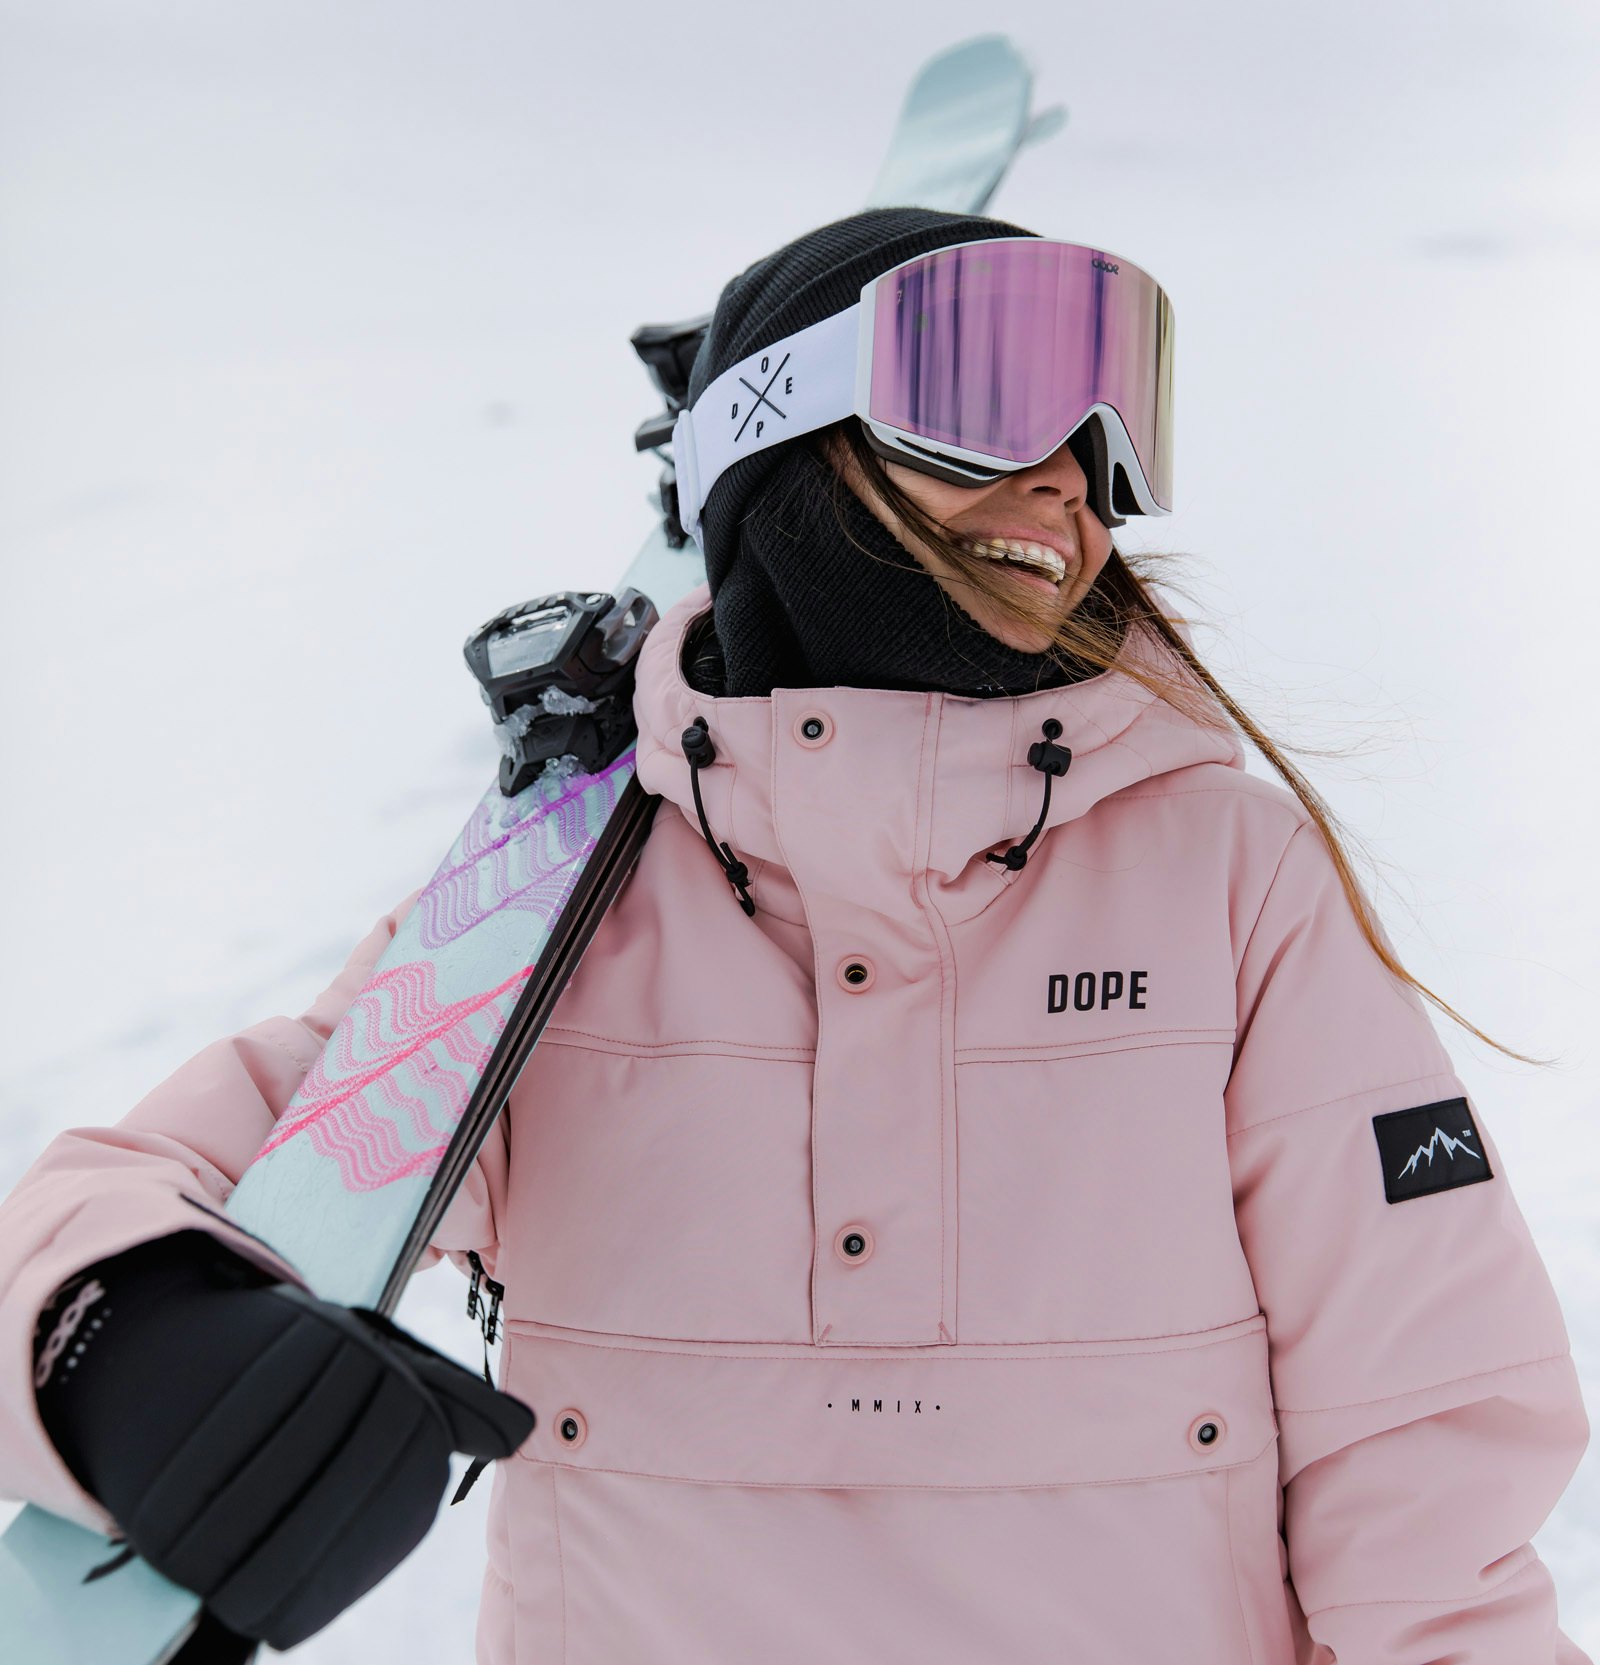 Stå på Ski med Briller | ridestore magazine